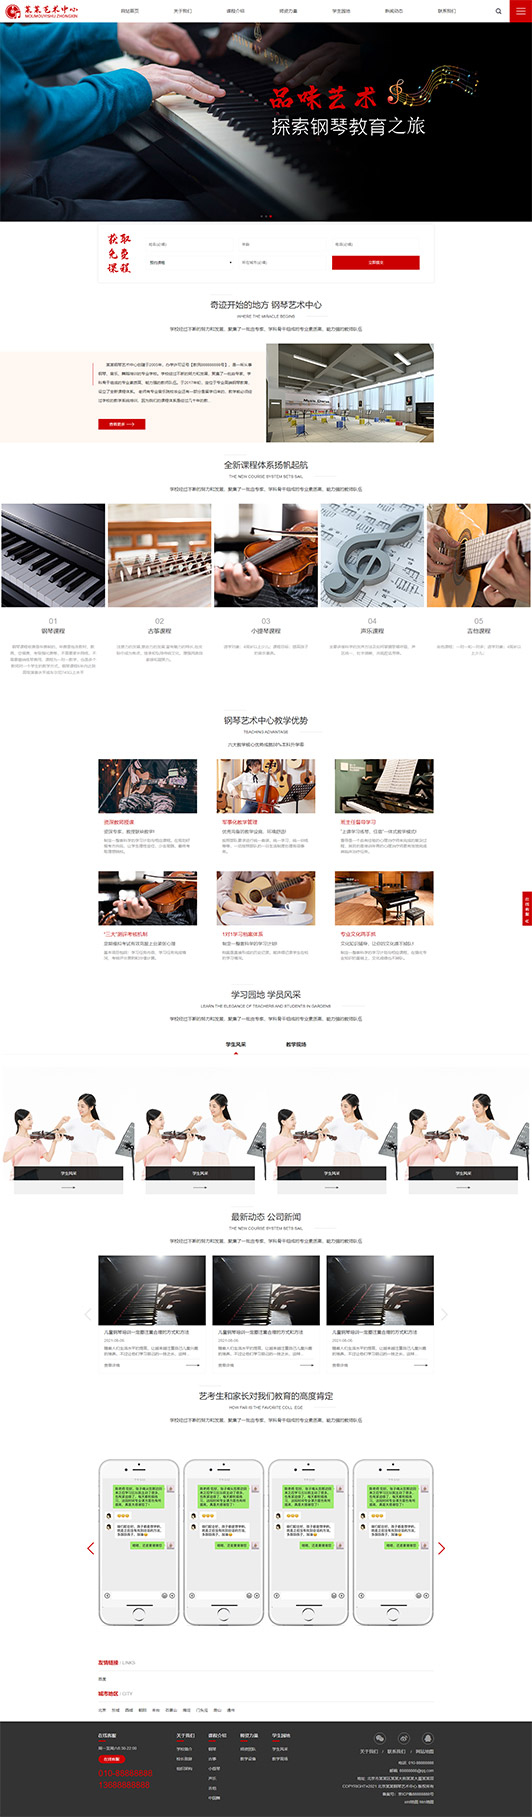 鸡西钢琴艺术培训公司响应式企业网站